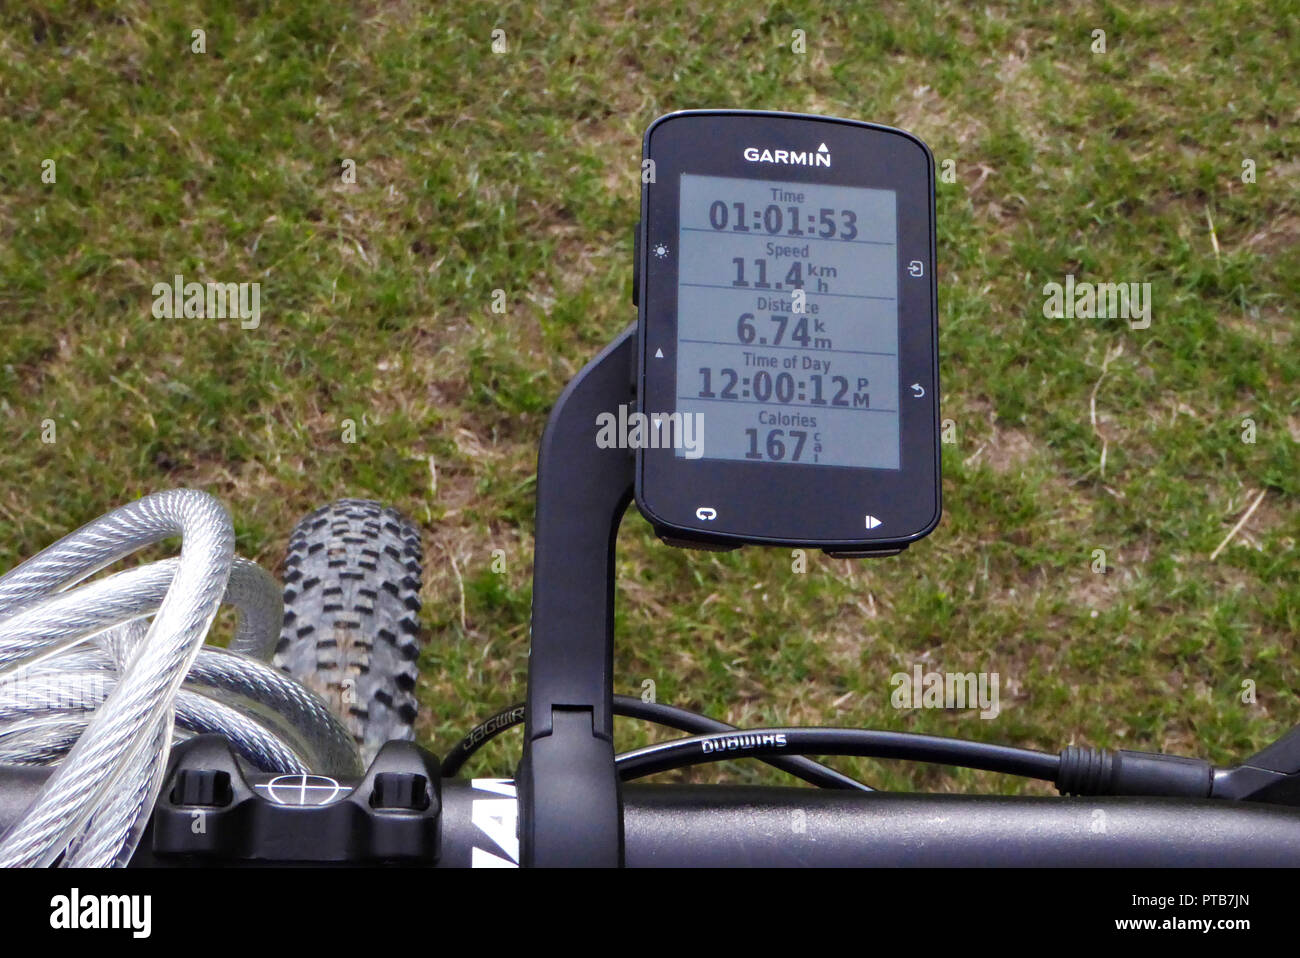 garmin edge 520 mountain bike off 63% - felasa.eu